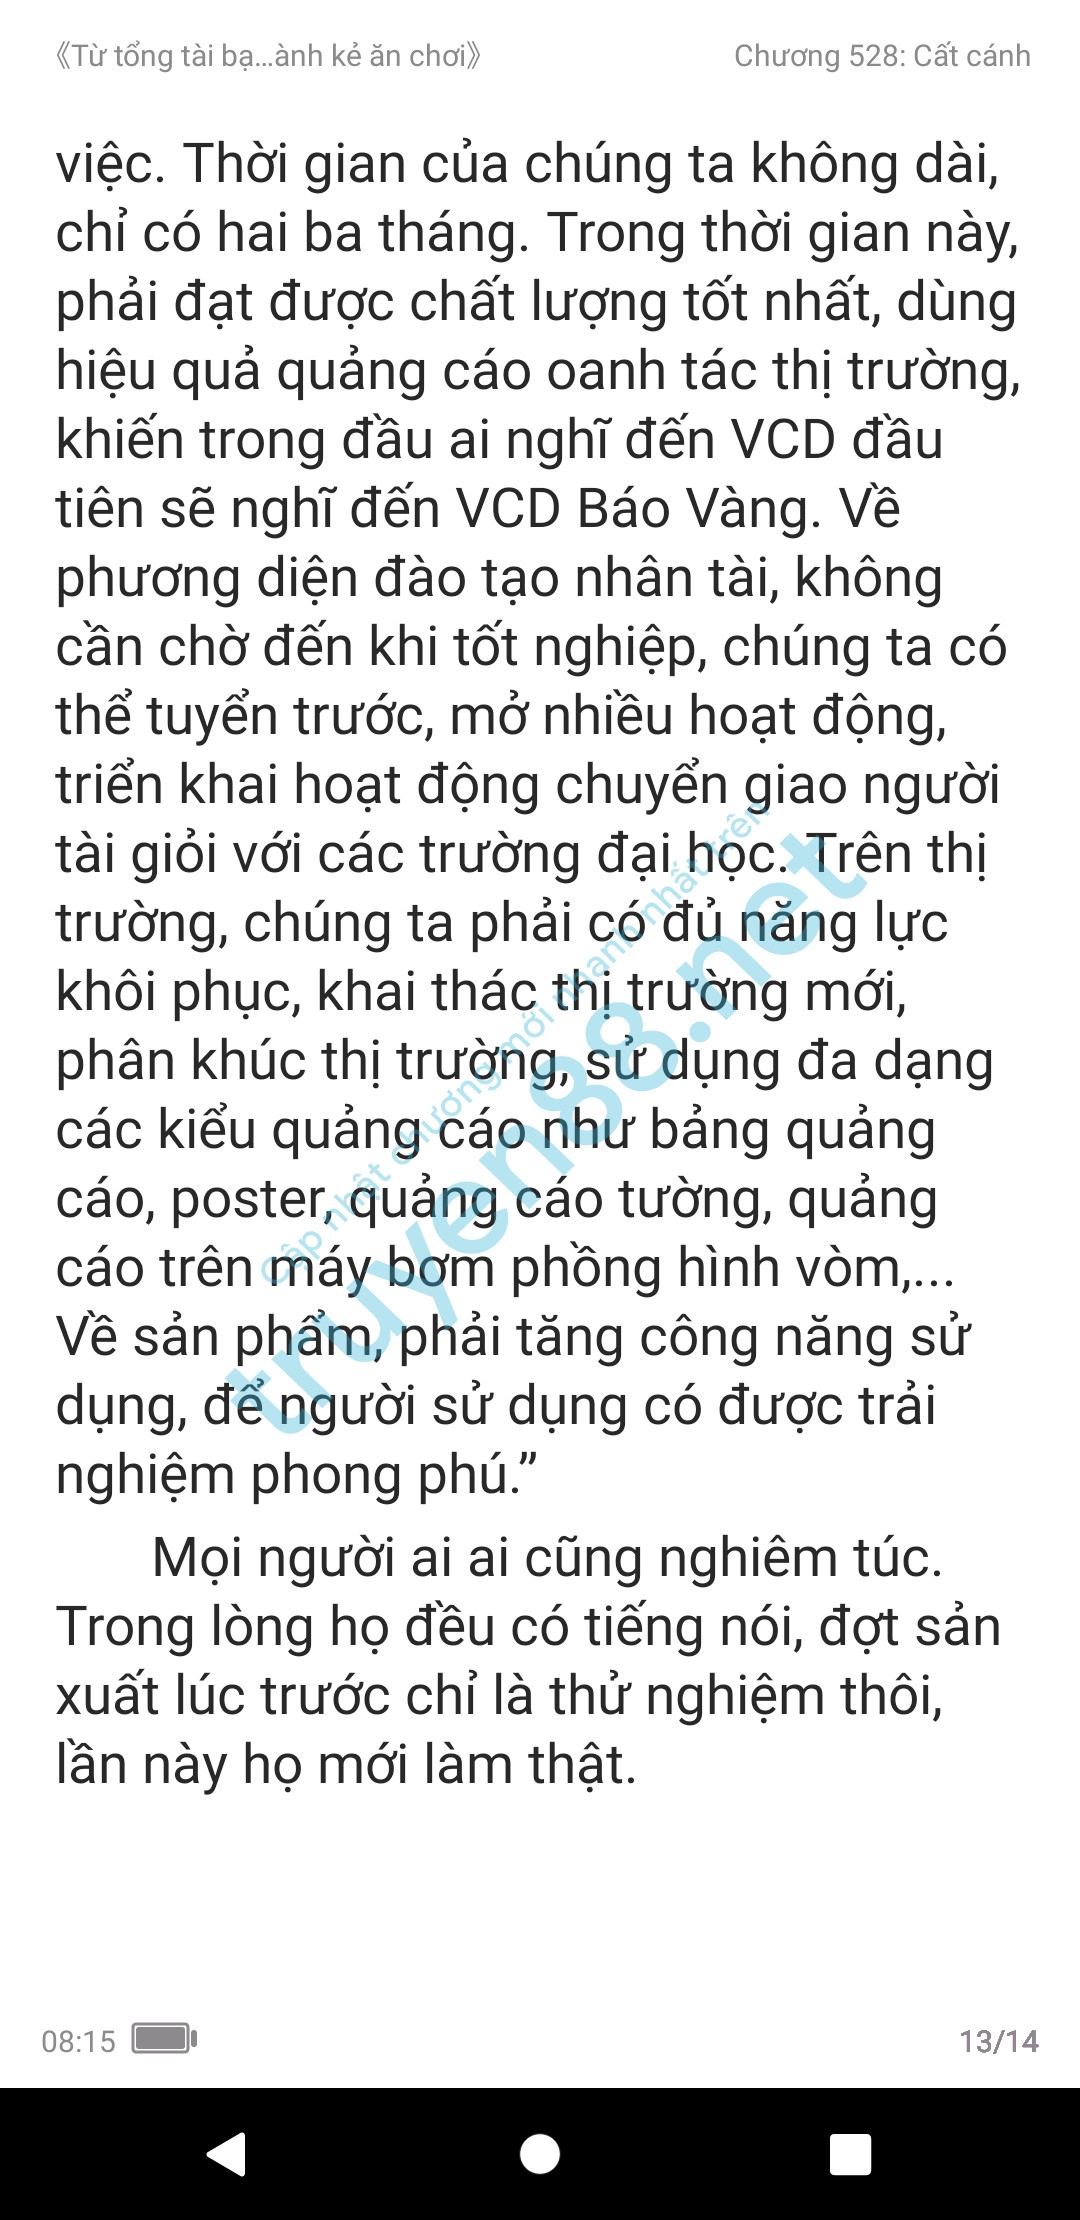 ke-an-choi-bien-tong-tai-528-2